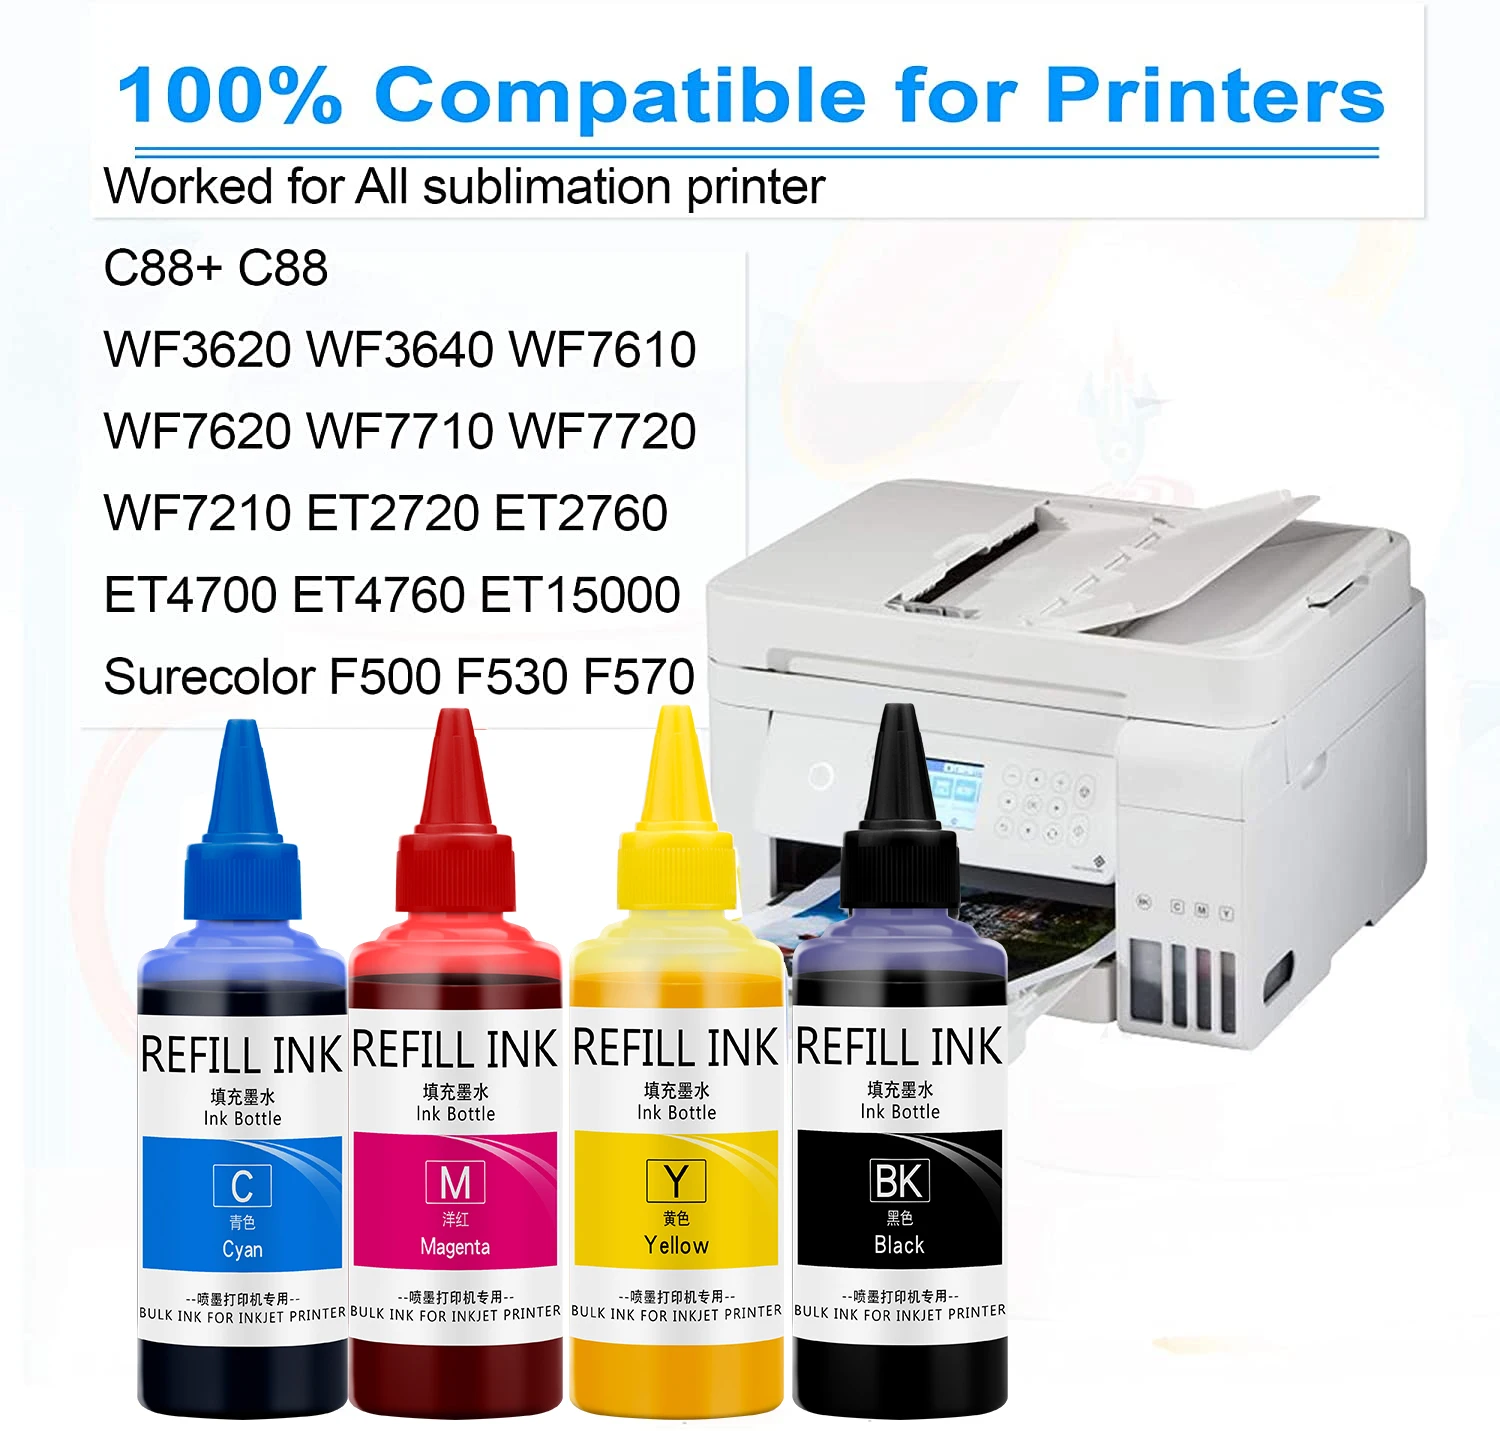 27XL 252XL Sublimation Ink For Epson WF-7710 WF-7720 WF-7210 WF-7110 WF-7120  WF-7610  WF-7620 WF-3620  WF-3640 Inkjet Printer